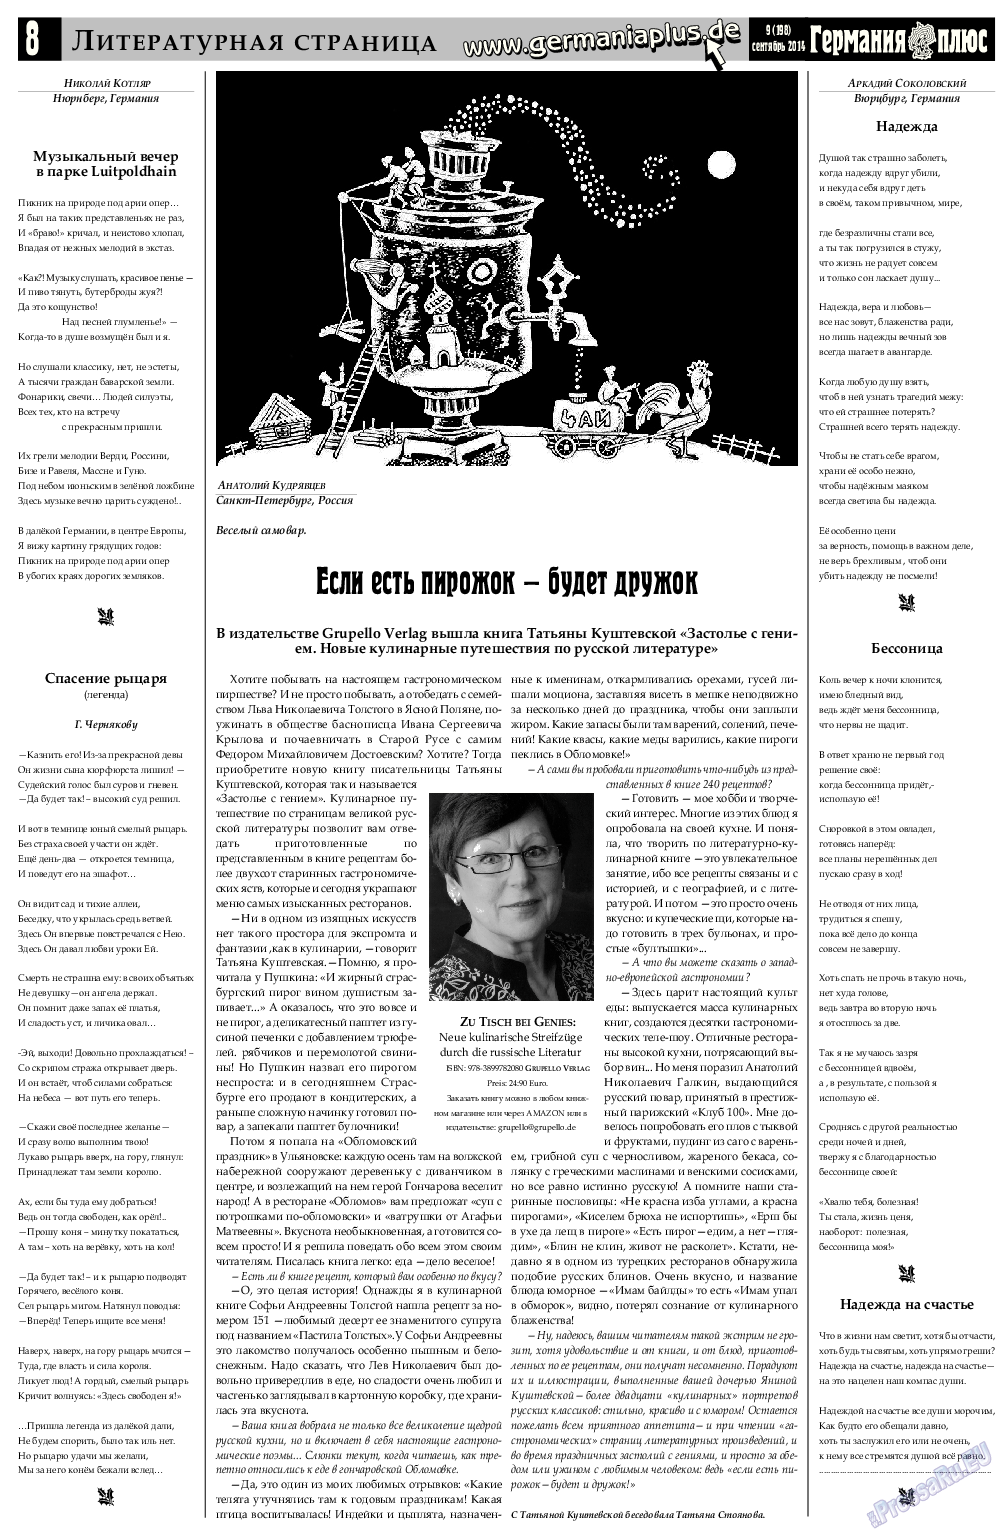 Германия плюс, газета. 2014 №8 стр.8